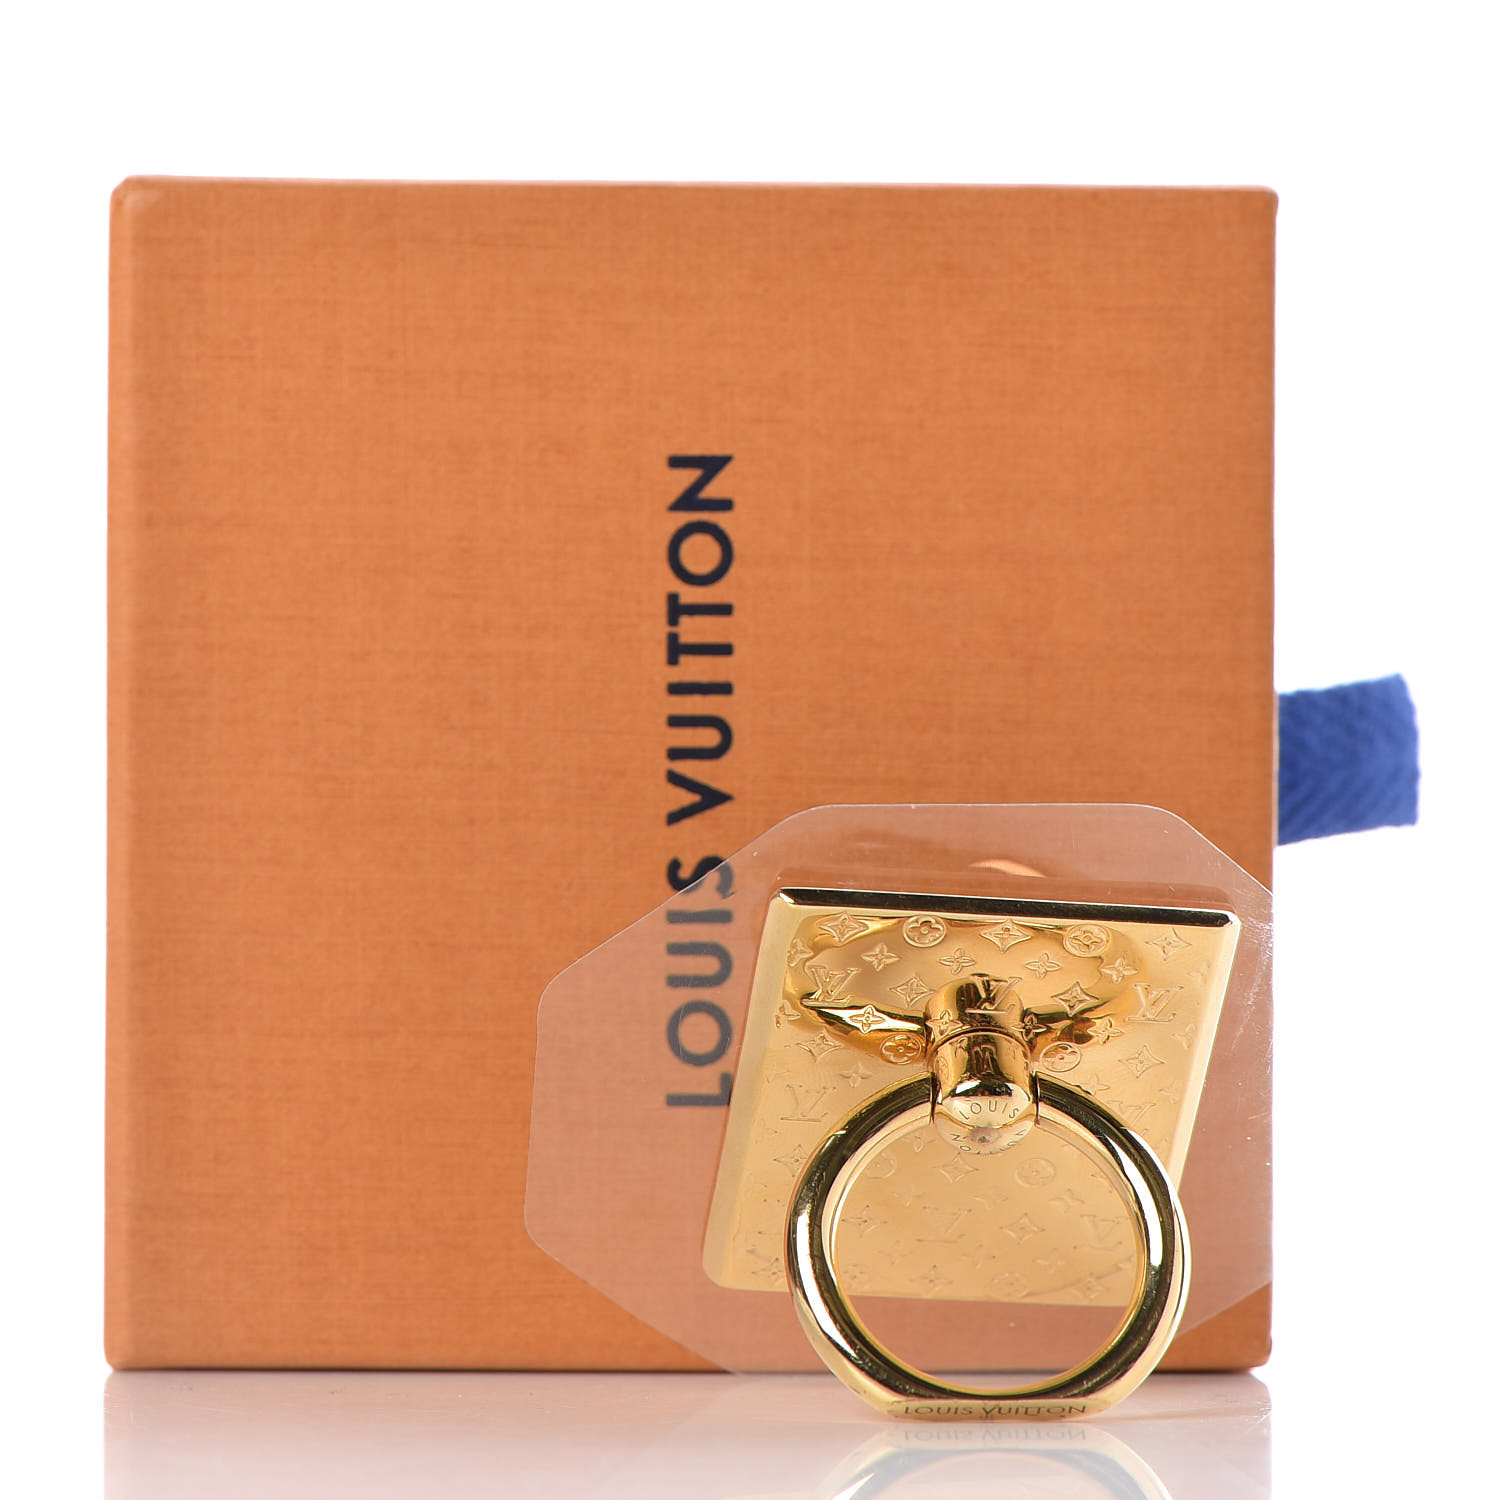 Louis Vuitton Nanogram Ring - Brass Band, Rings - LOU695731